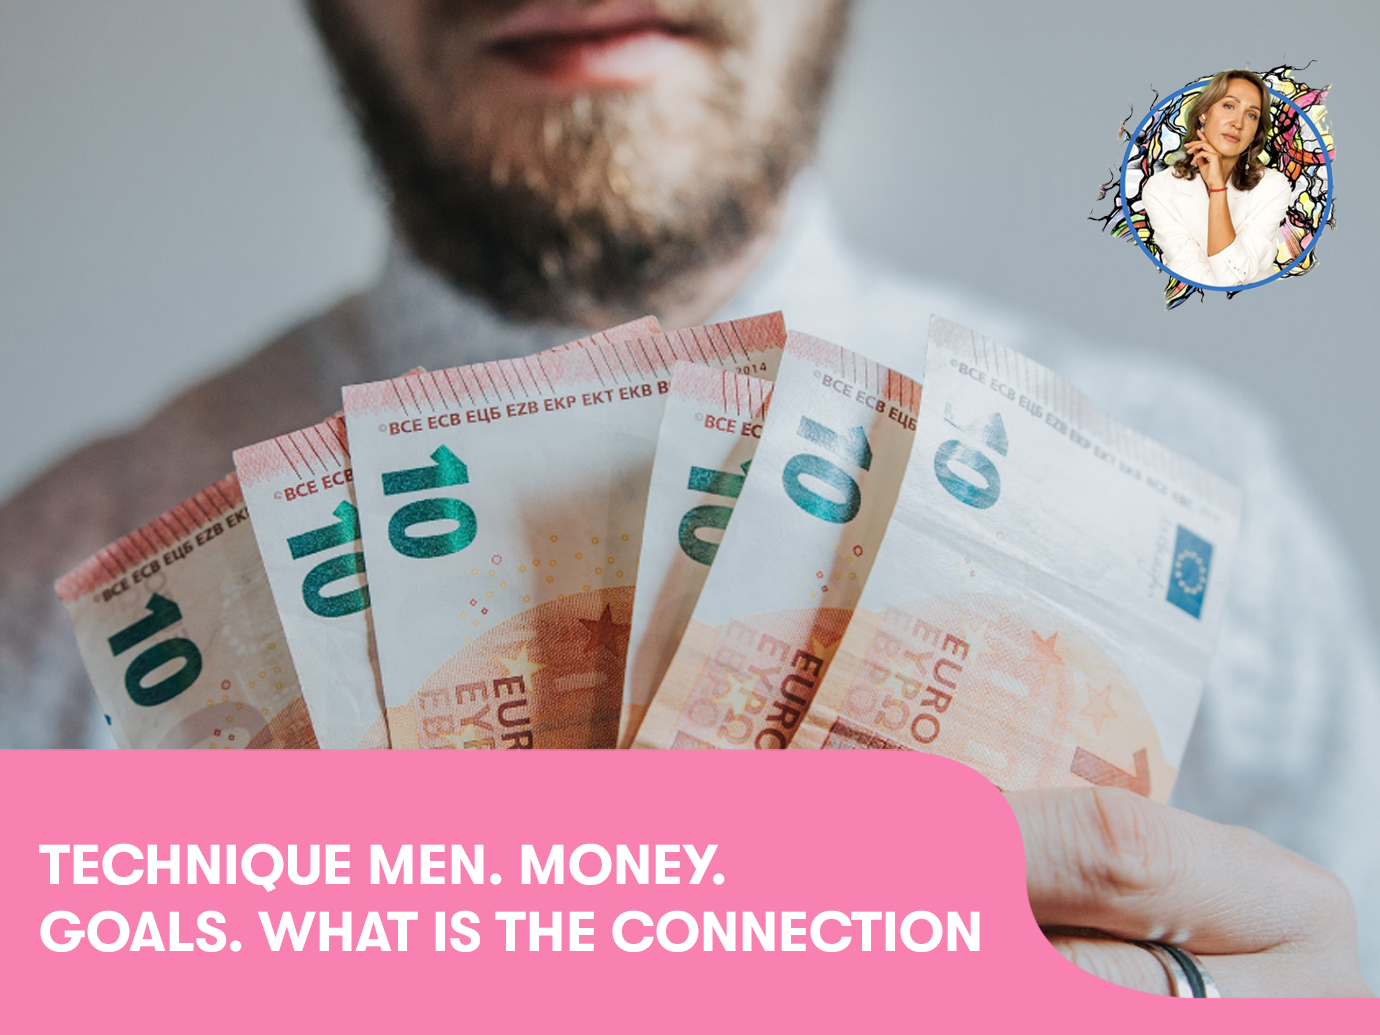 Technique “Men. Money. Goals. What is the connection?“